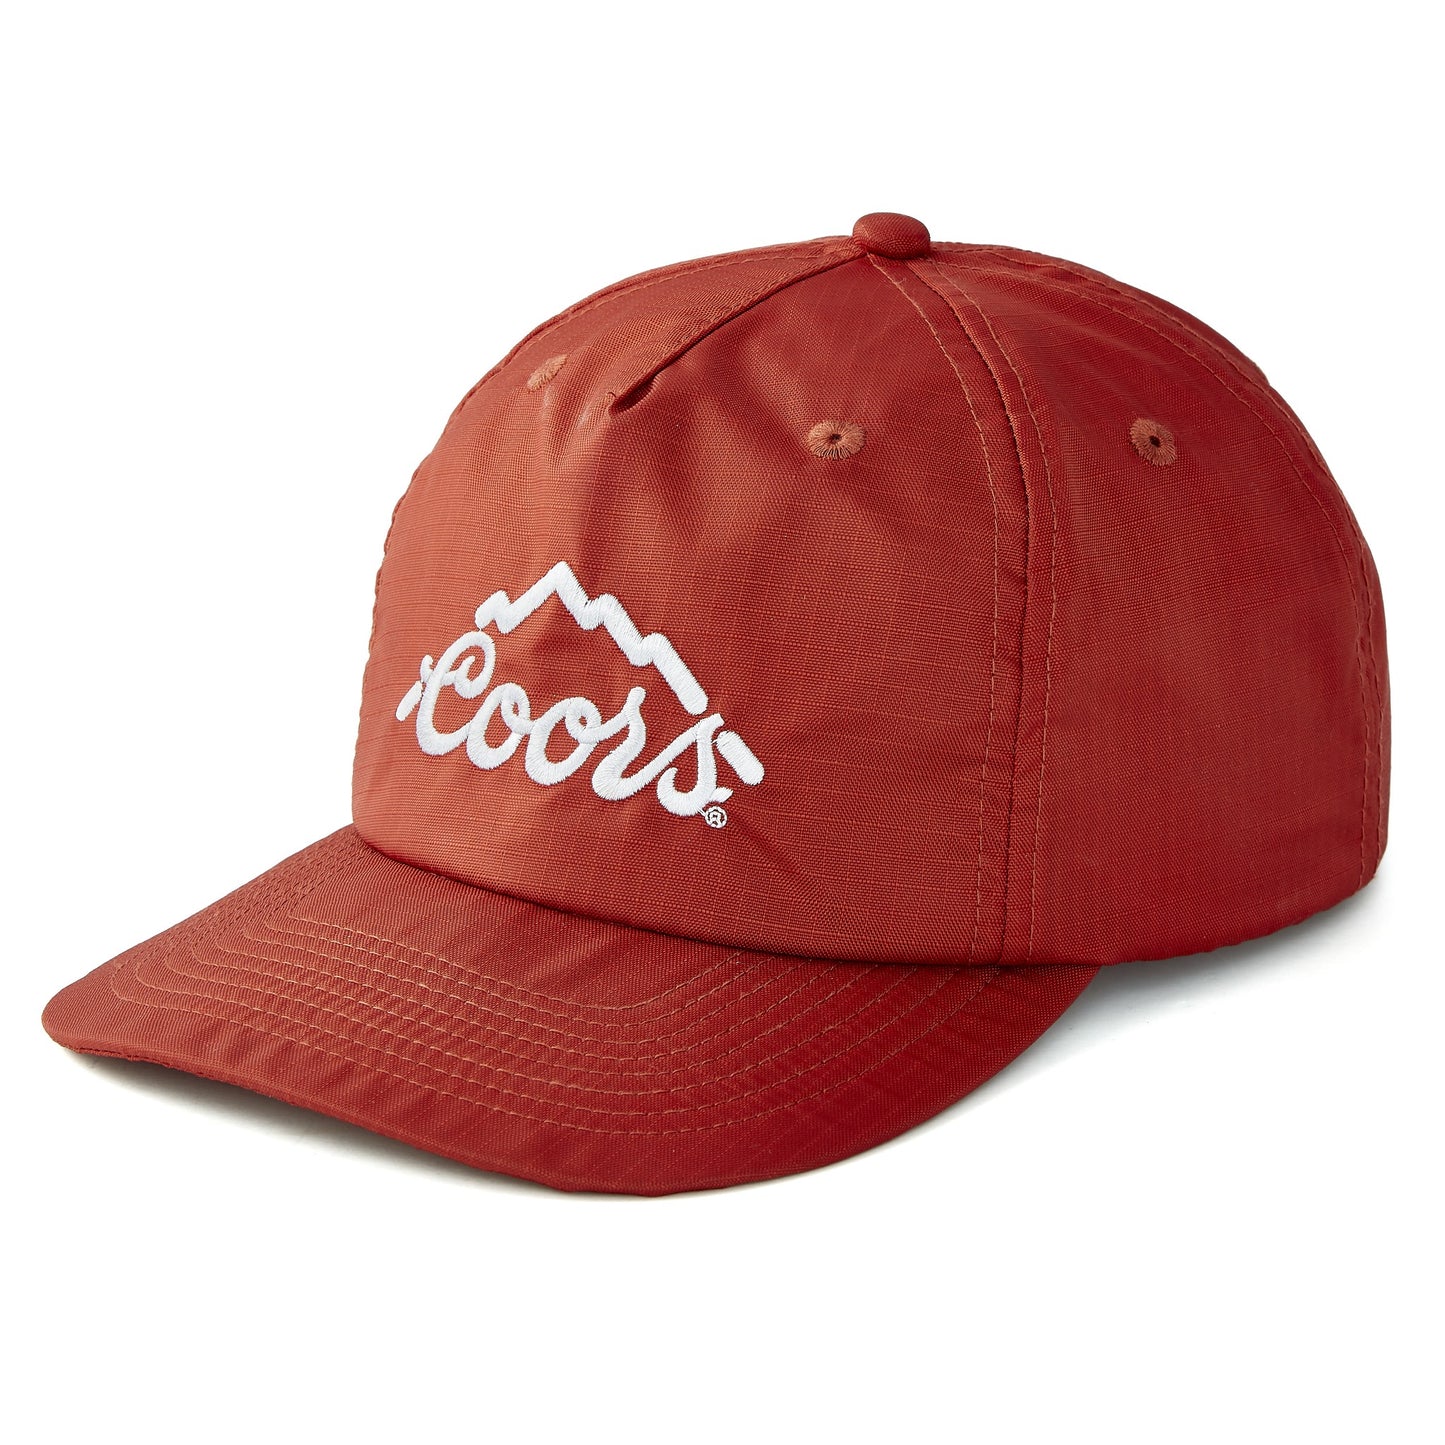 Coors x Huckberry Ripstop Cap